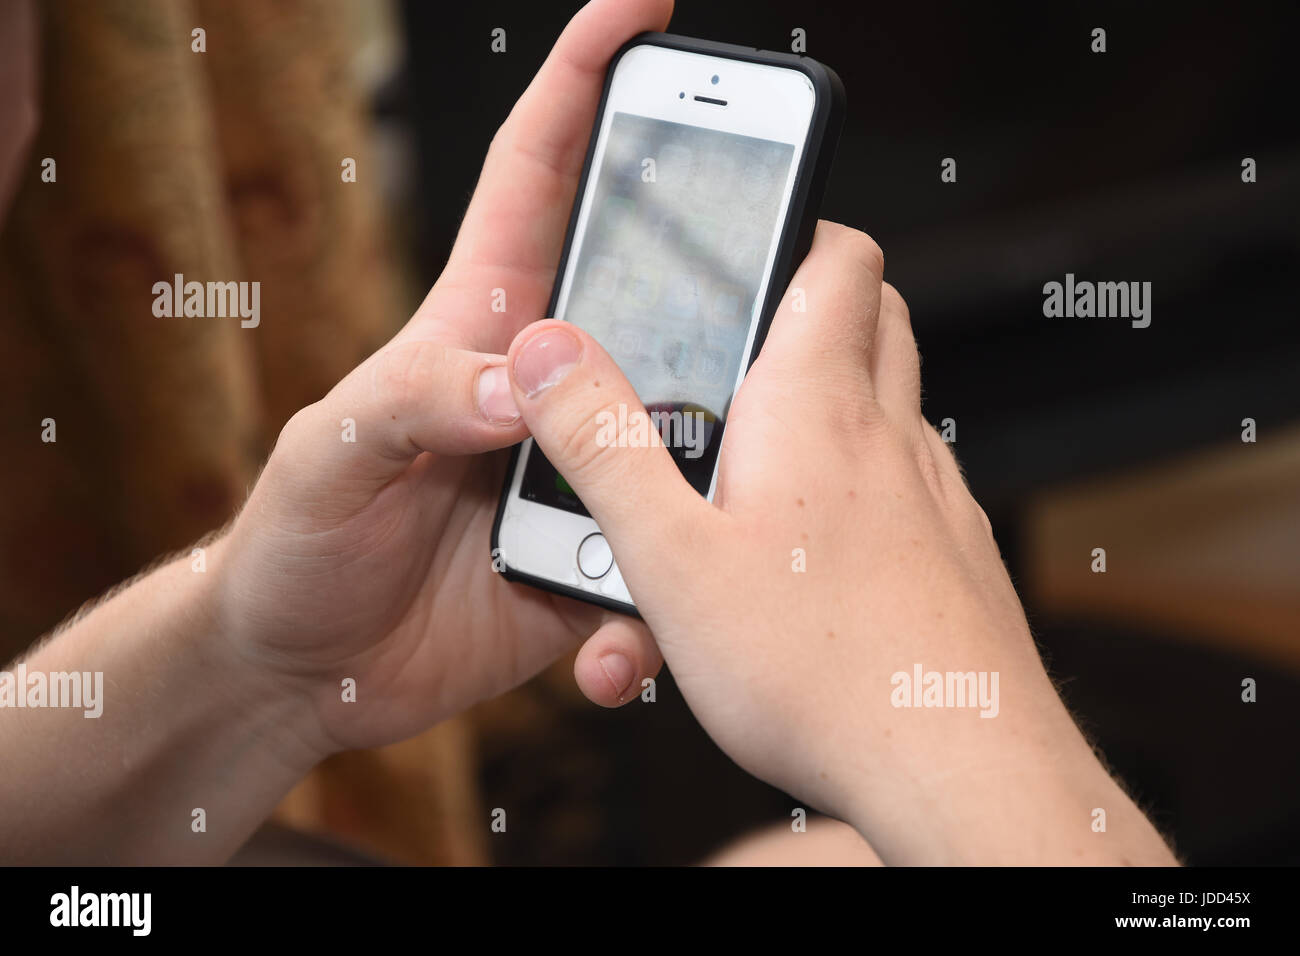 Adolescente de 19 años con un iPhone de Apple se teléfono móvil para leer y enviar mensajes de texto Foto de stock